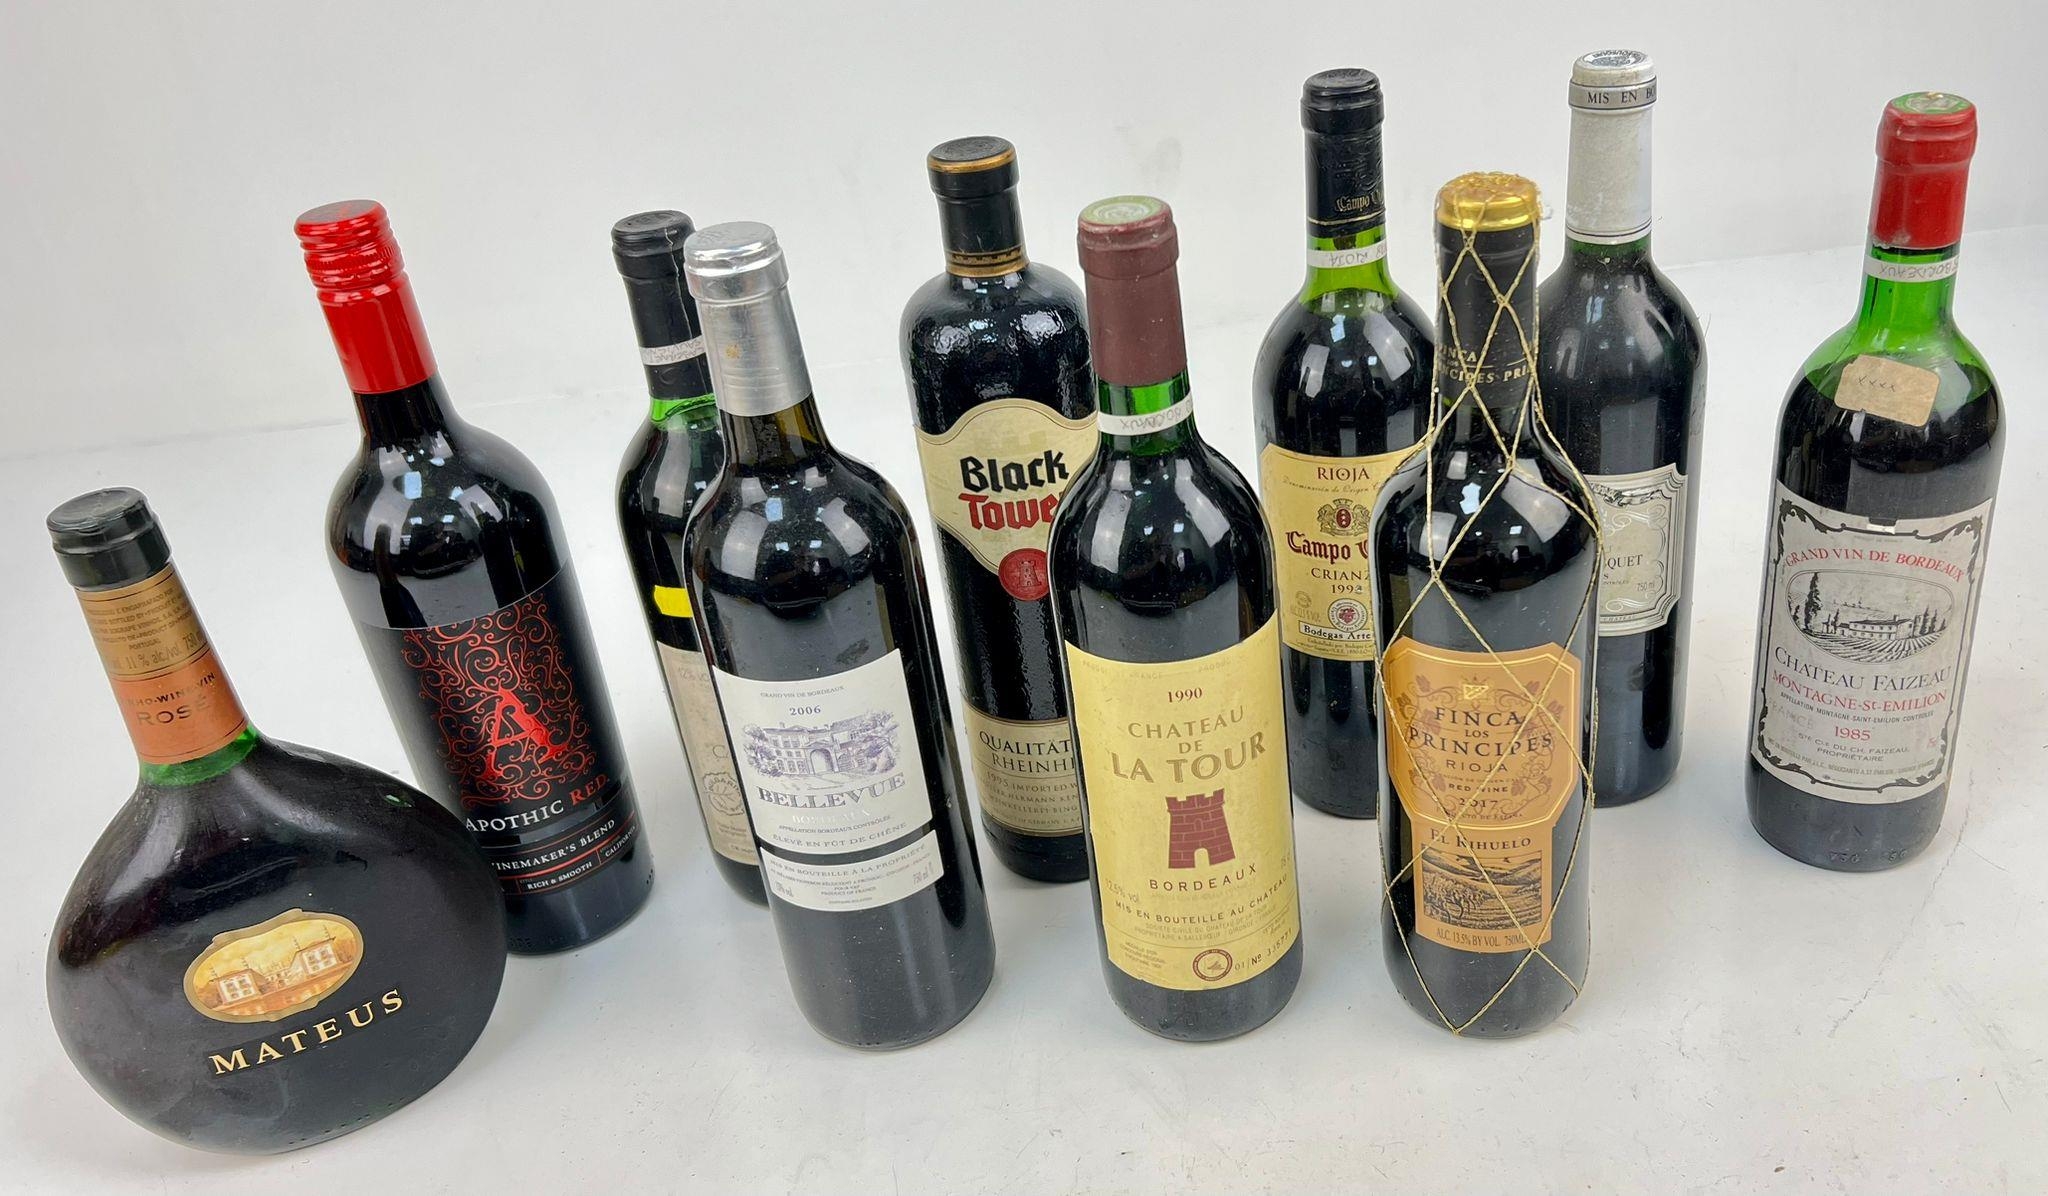 Ten Bottles of Red Wine Including: 1990 Chateau de la Tour, 2006 Chateau Belleview Bordeaux and a